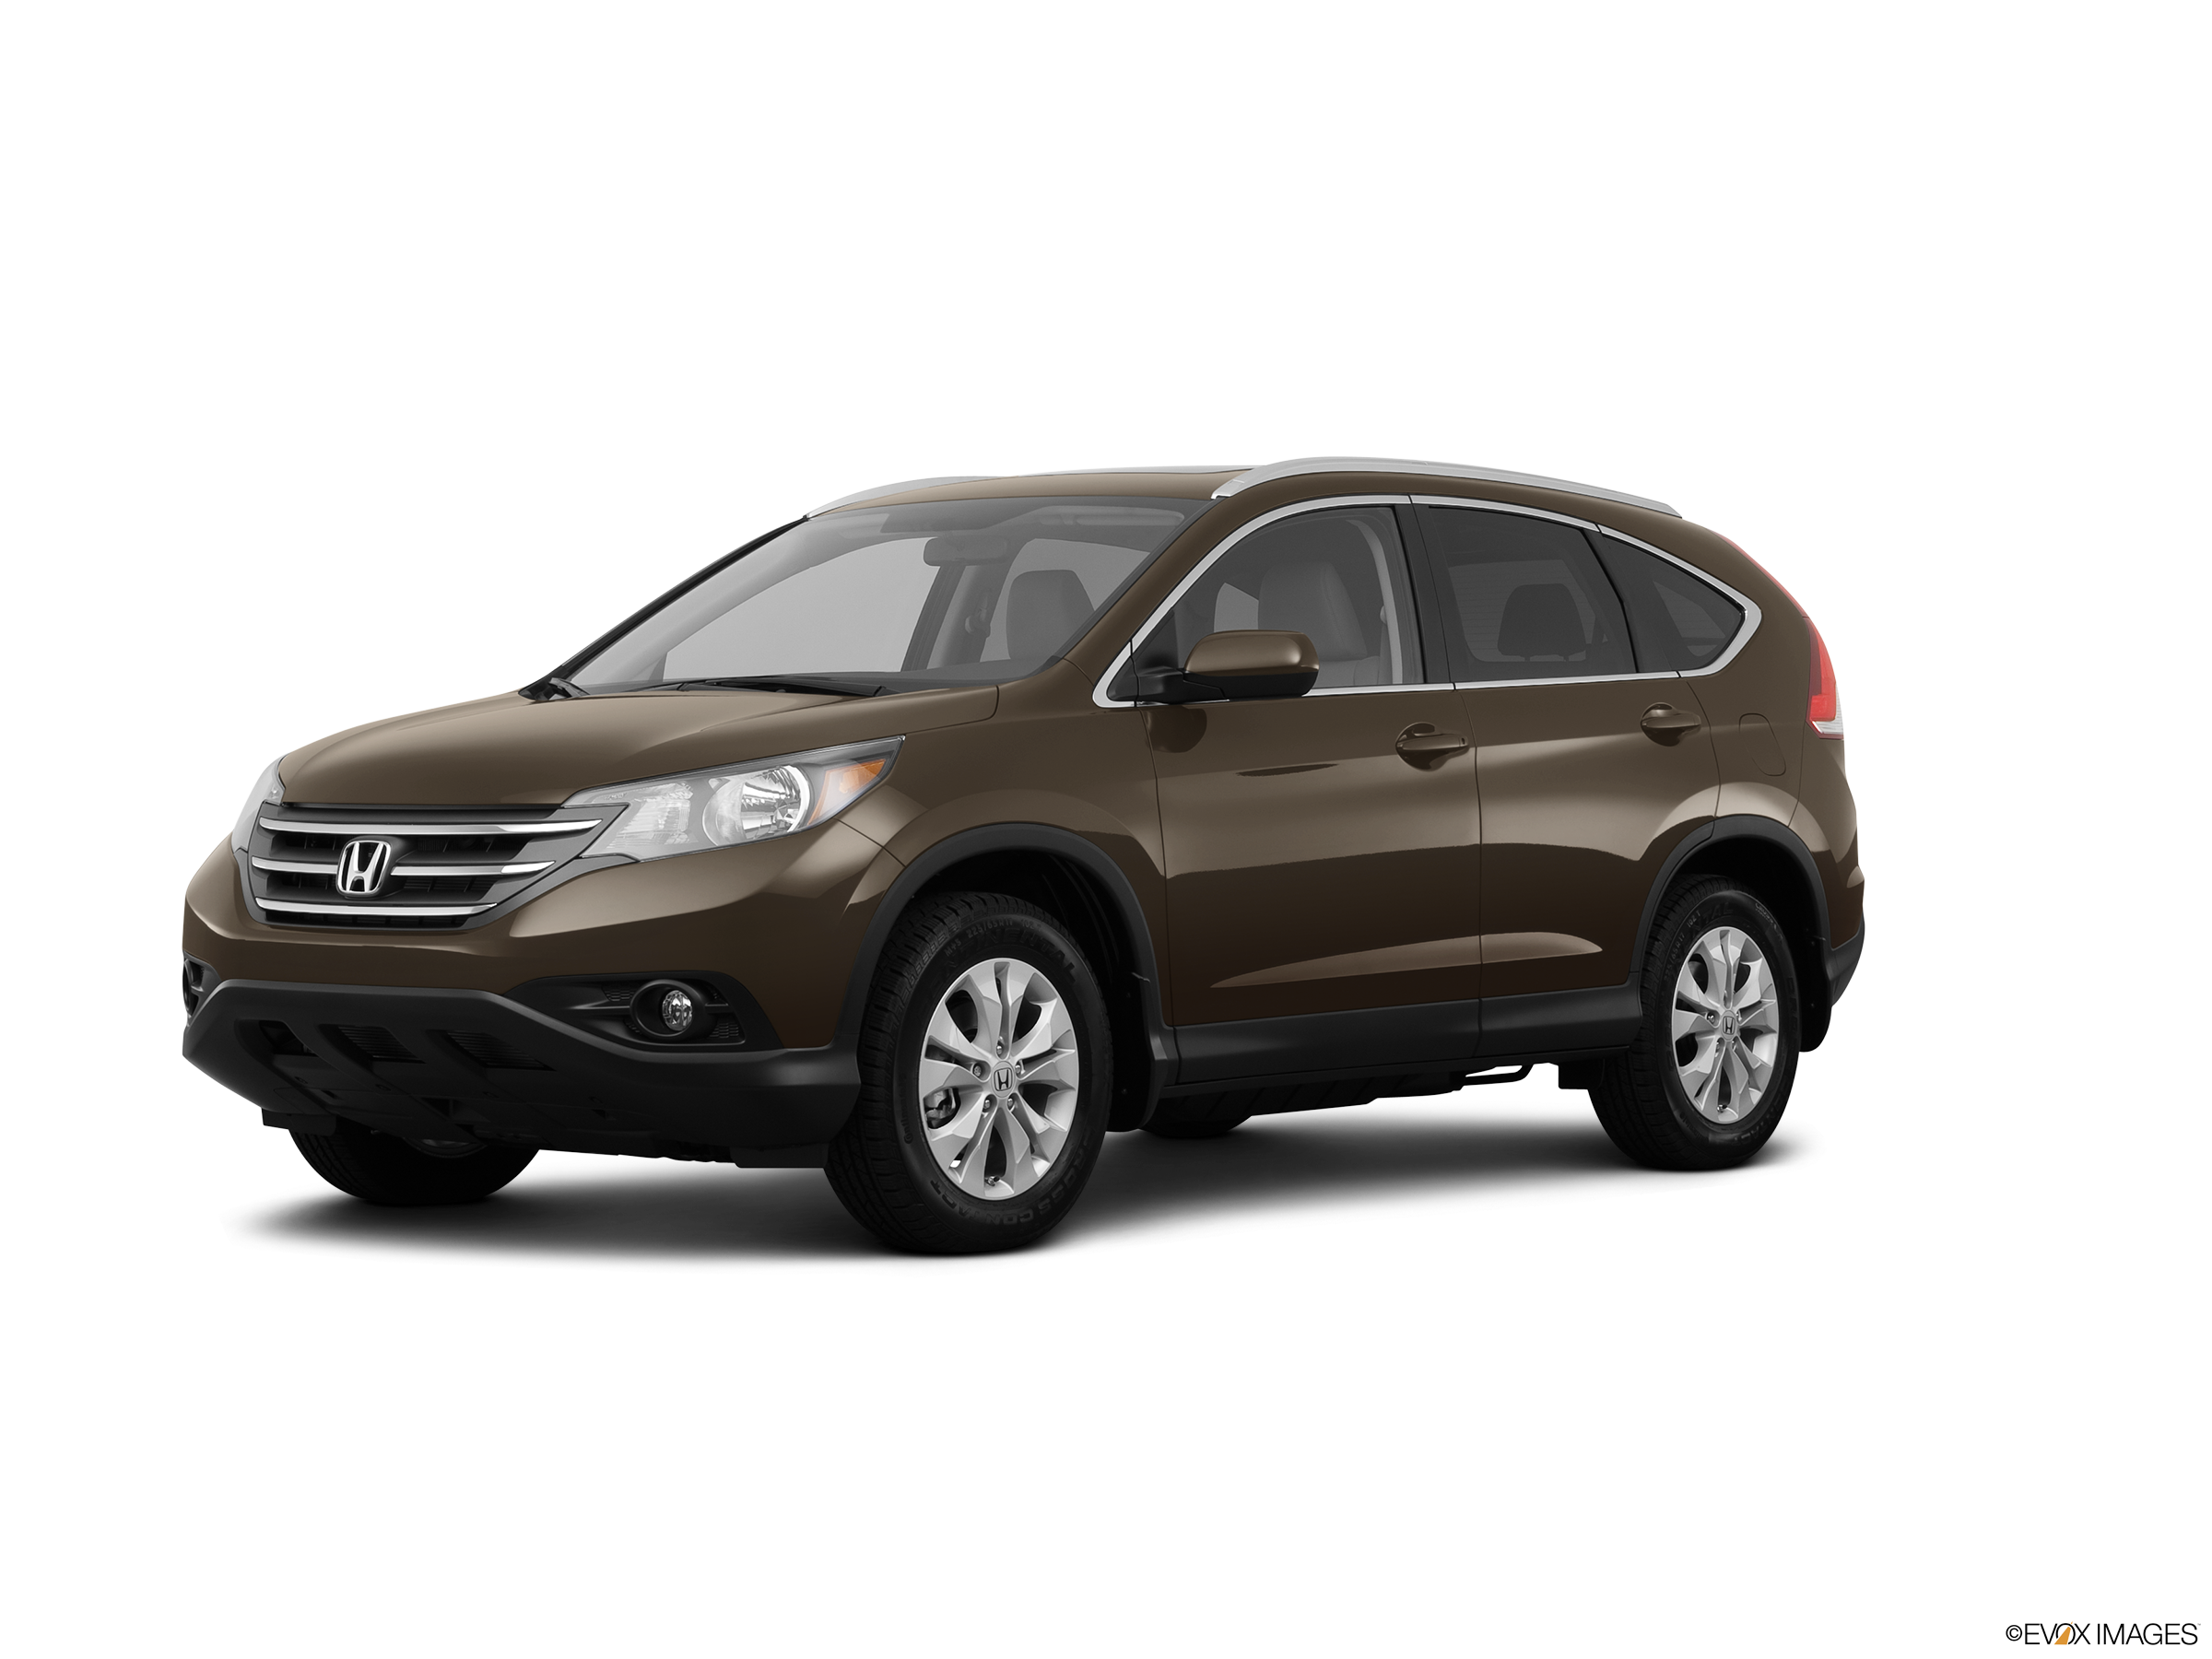 Gia đình cần bán Honda CRV 2013 AT màu xám hồng  Đức Kí Gửi Mua Bán Xe   MBN315752  0966182558